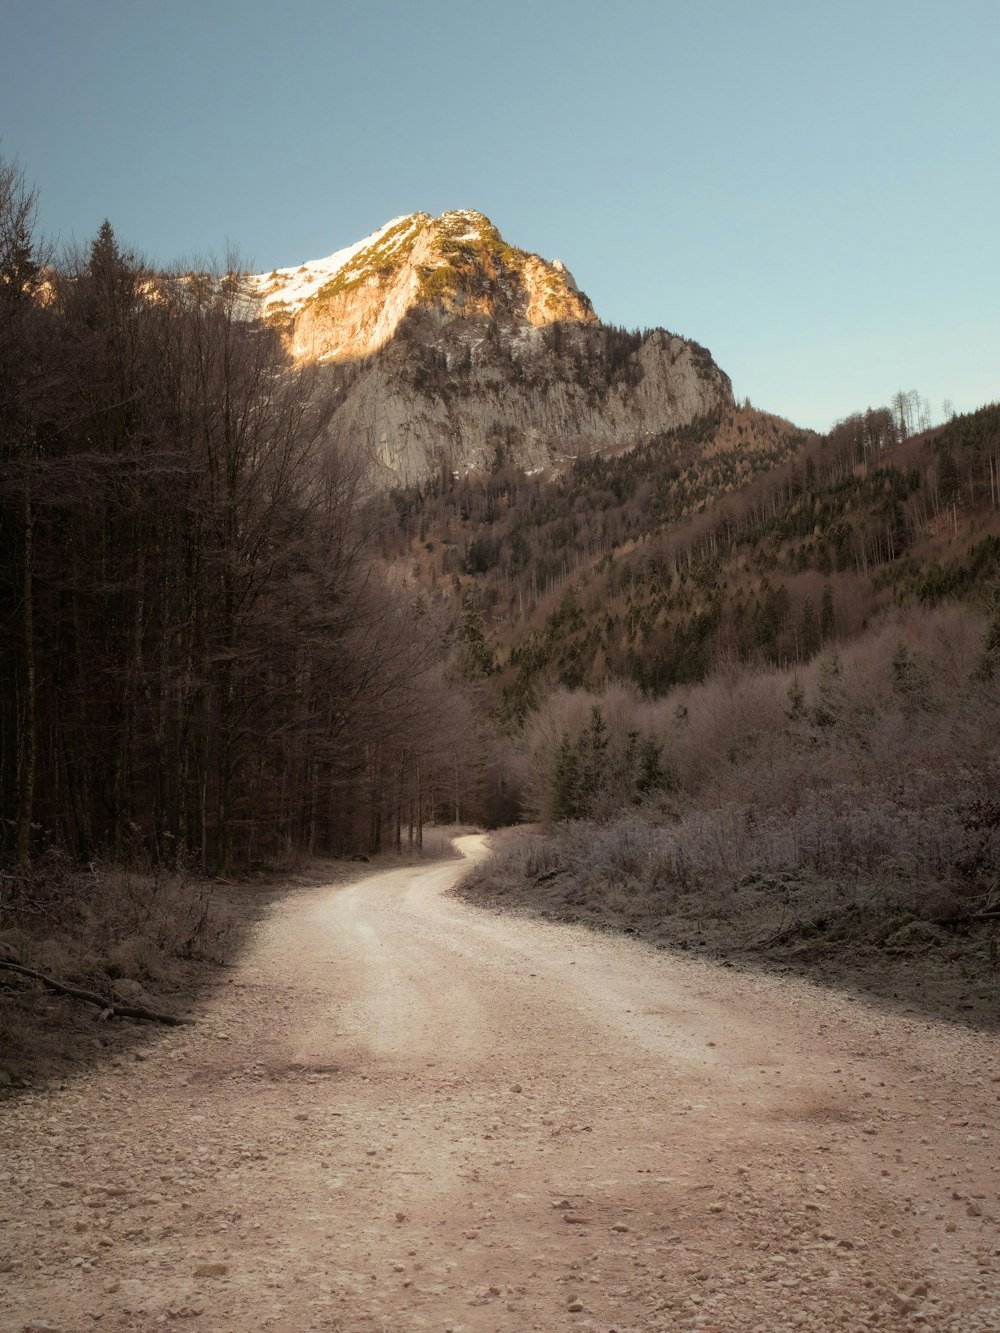 Un camino de tierra con una montaña al fondo